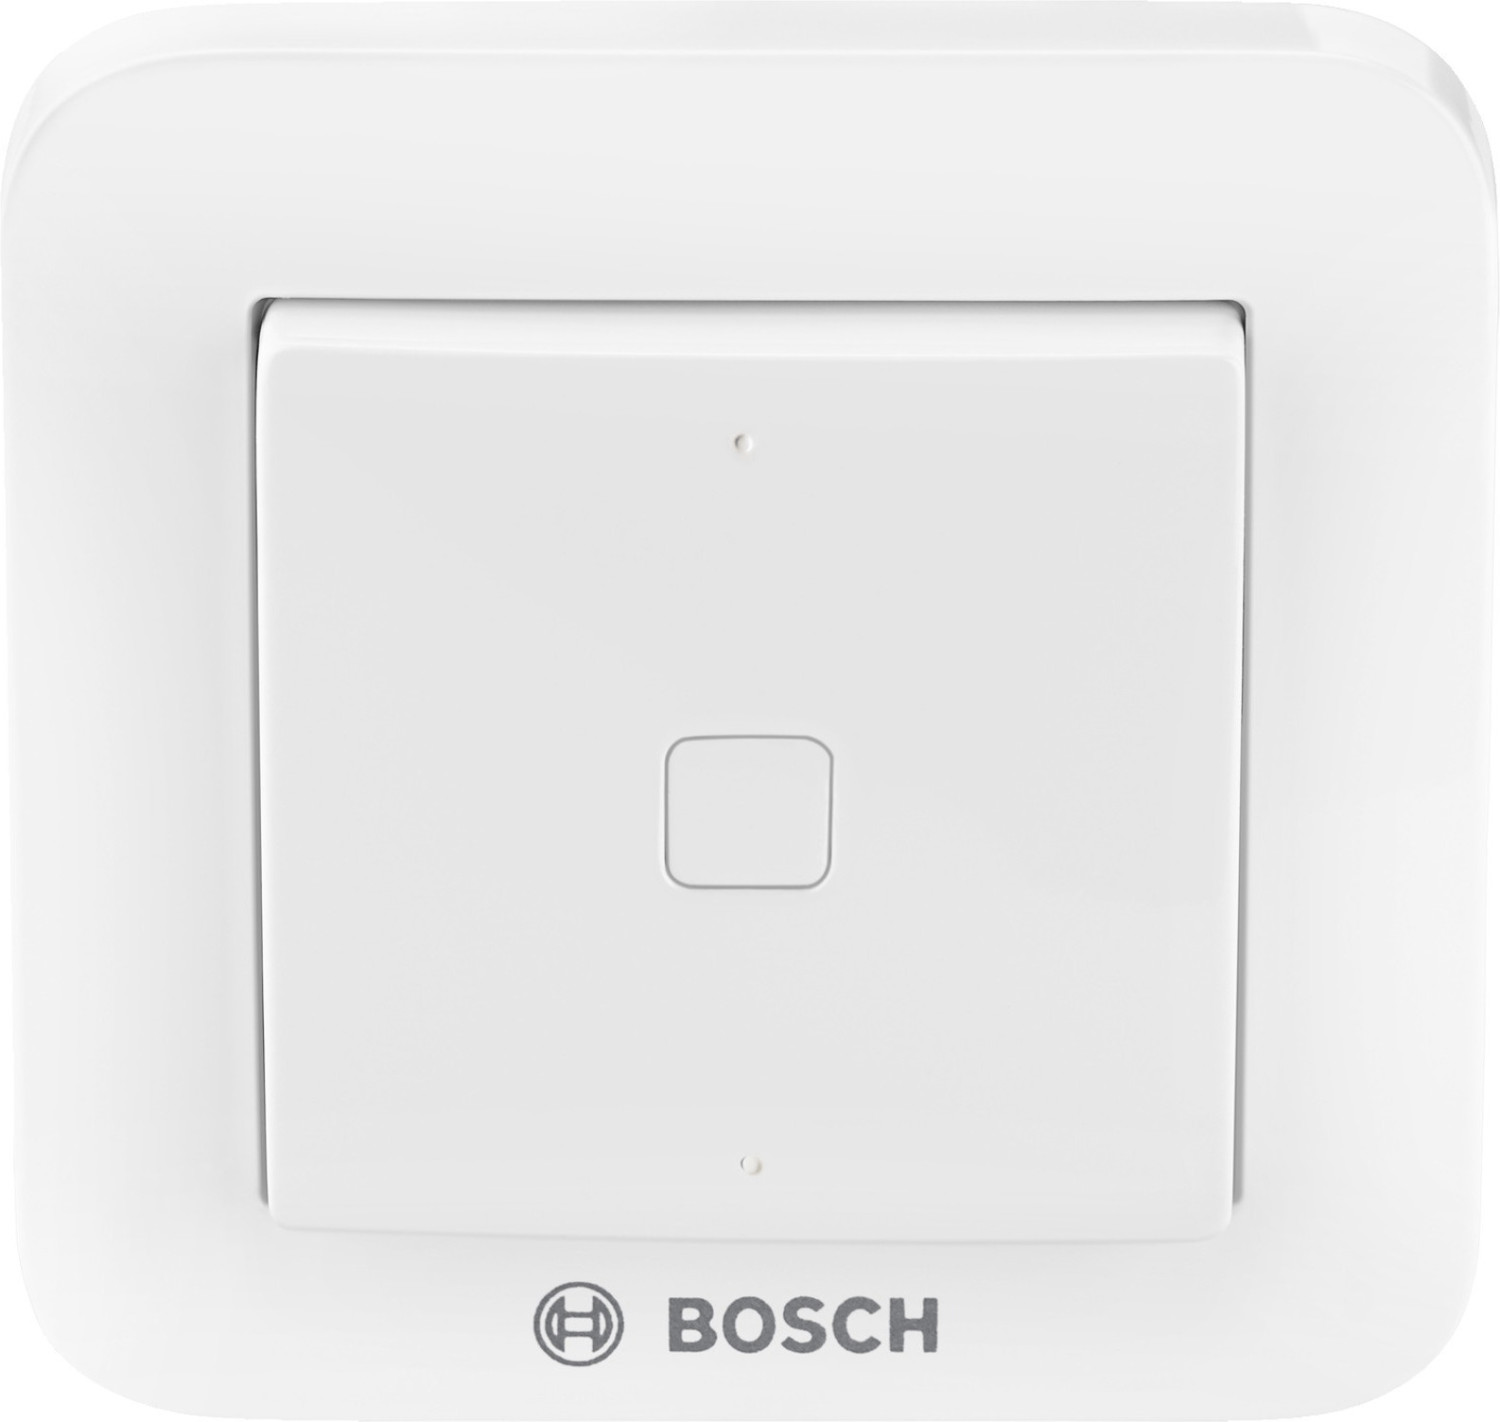 Bosch Universal Switch weiß (8750000372) ab 32,95 €